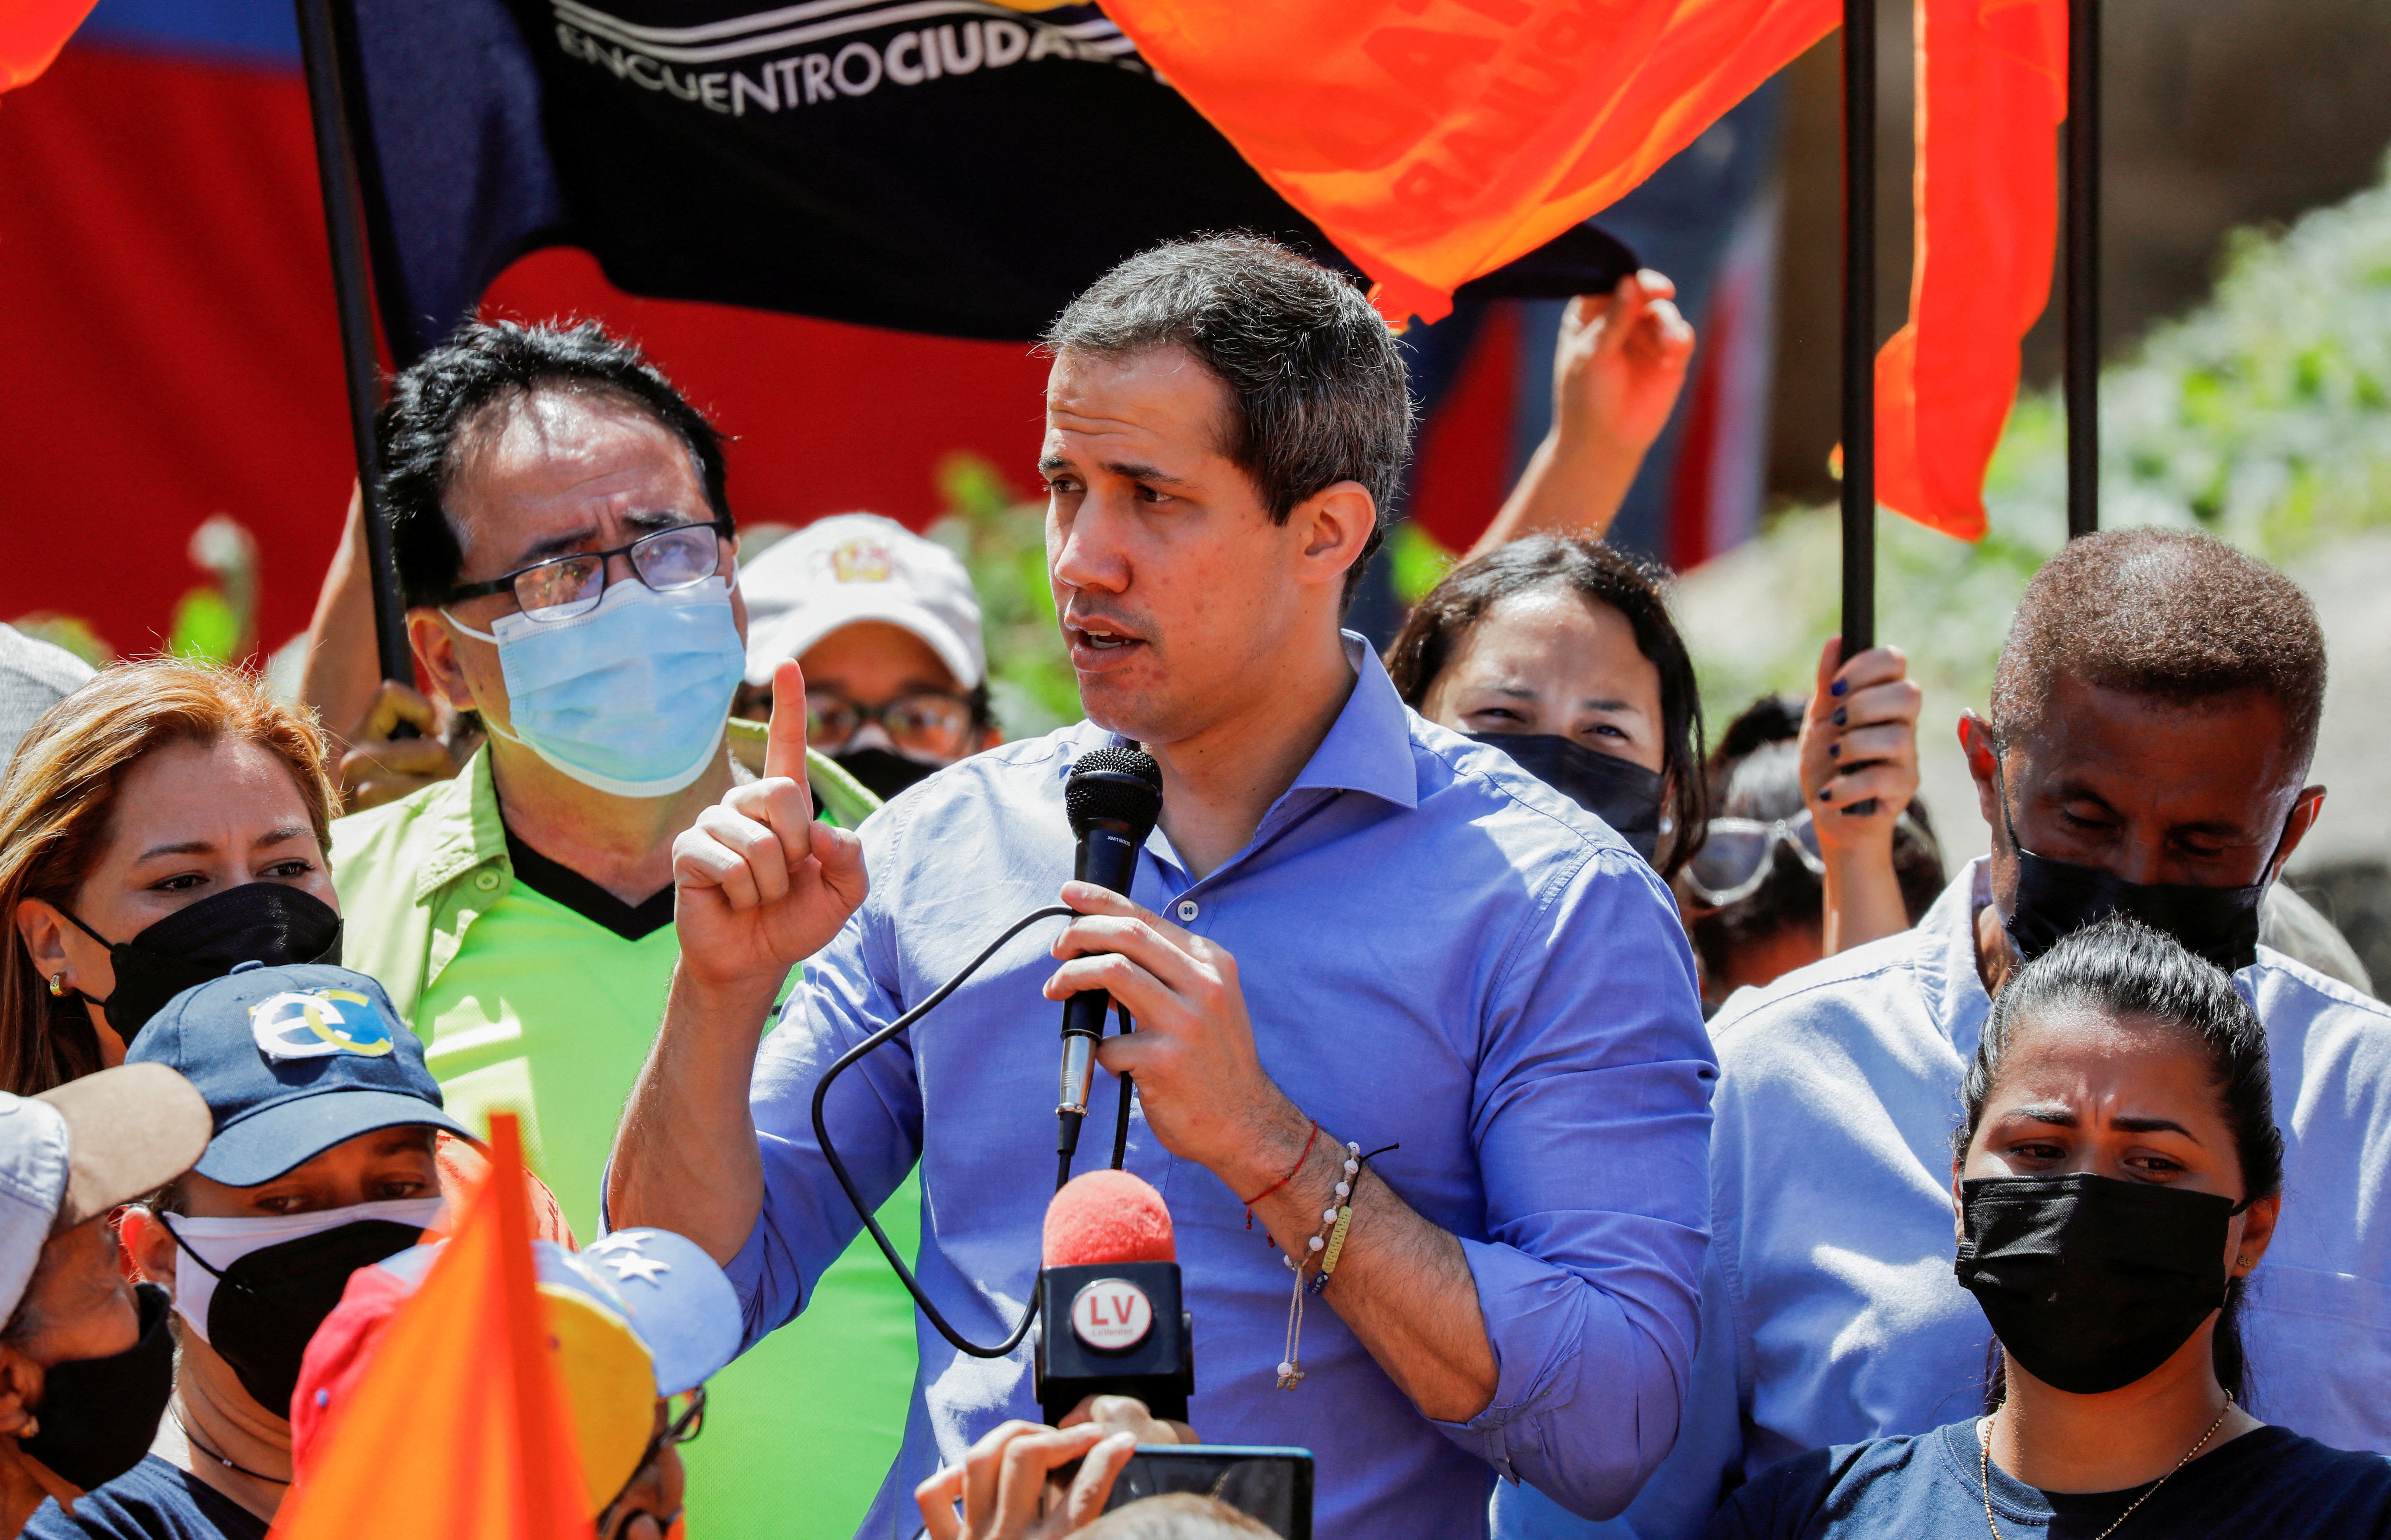 El líder opositor, Juan Guaidó